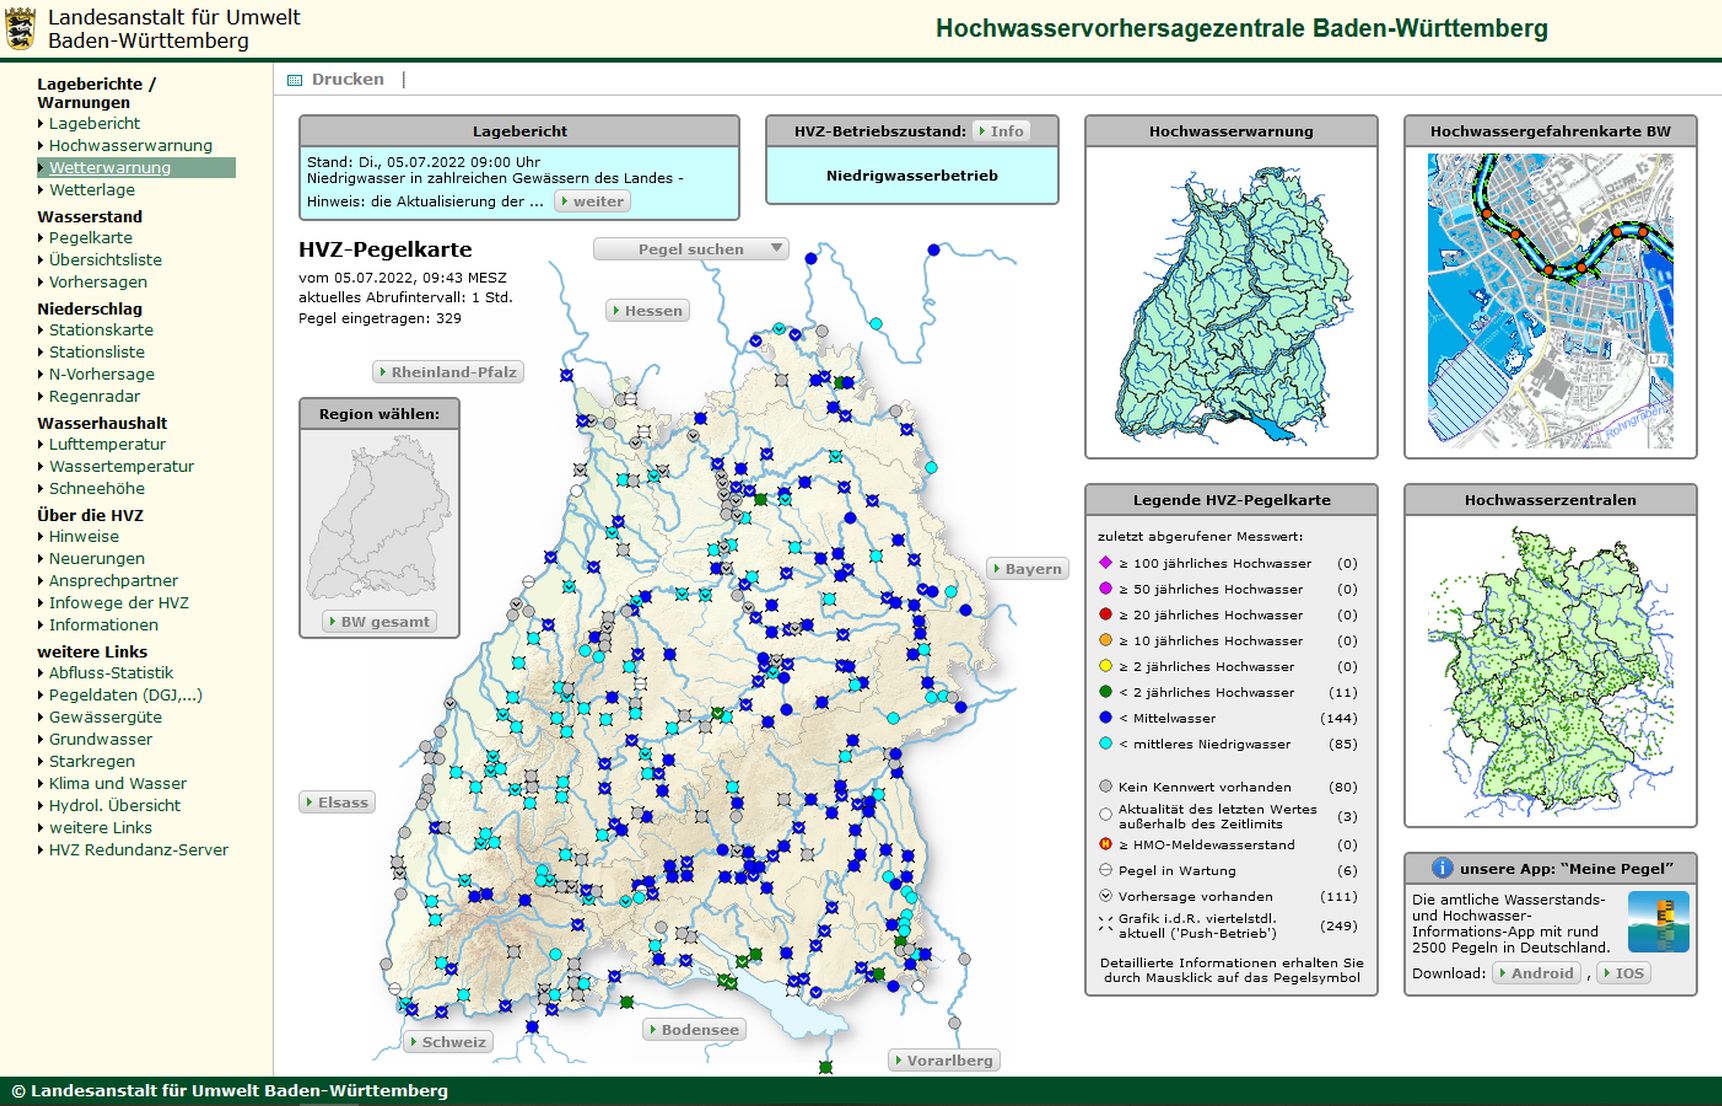 Startseite der Webseite der Hochwasservorhersagezentrale. Zu sehen ist eine Karte, auf der die Pegelstände farblich zu sehen sind. Zudem finden sich auf der Startseite Einstiegspunkte zu unterschiedlichen Informationsangeboten.